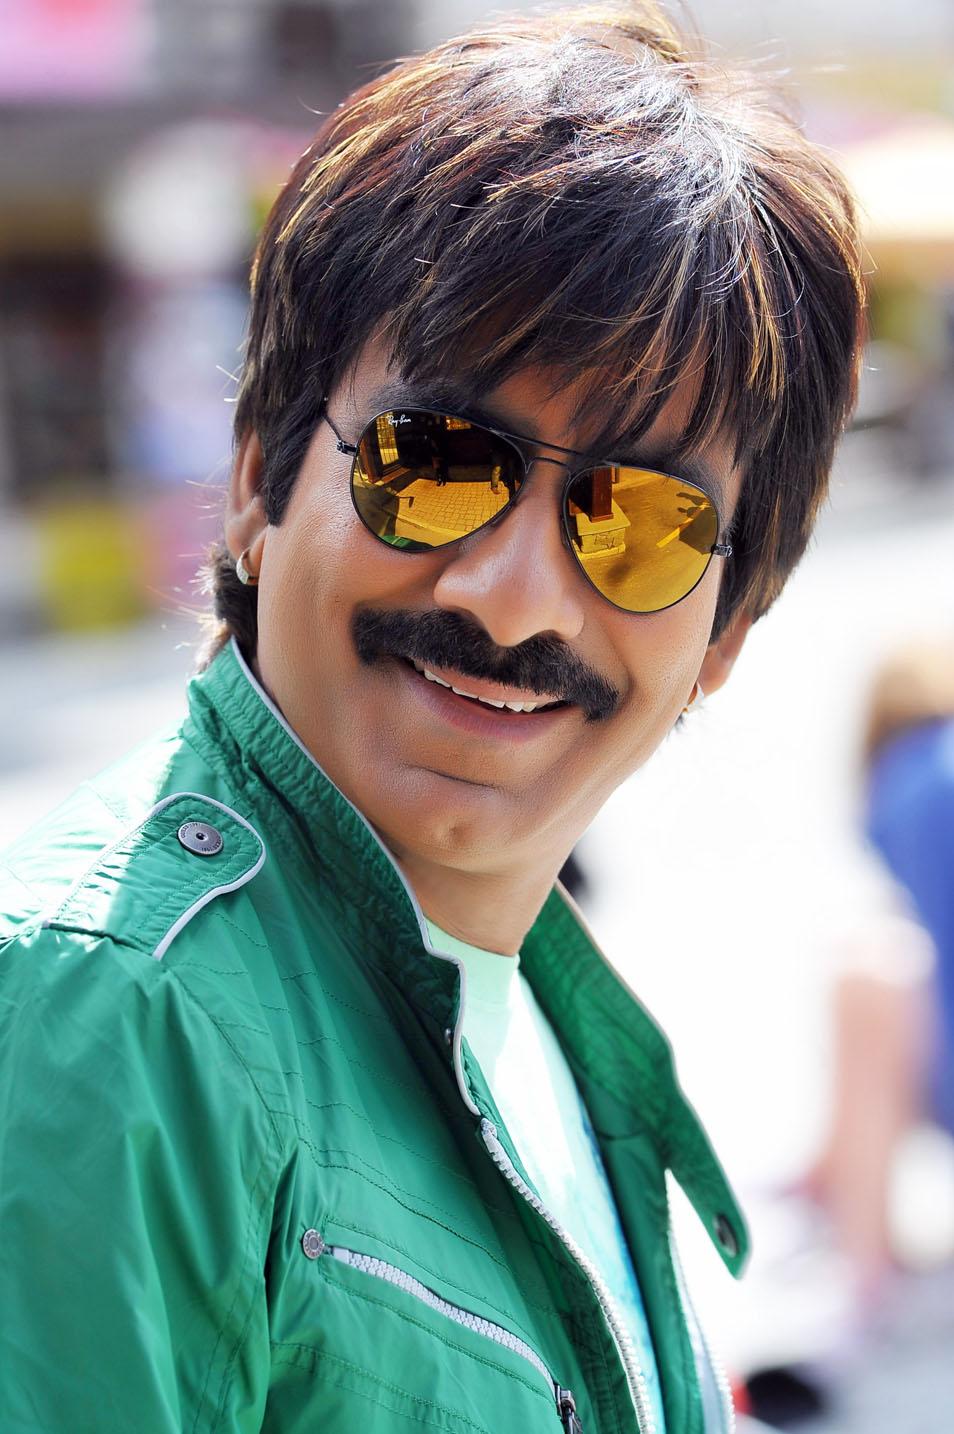 Ravi Teja Actor Photo New Image Free Download